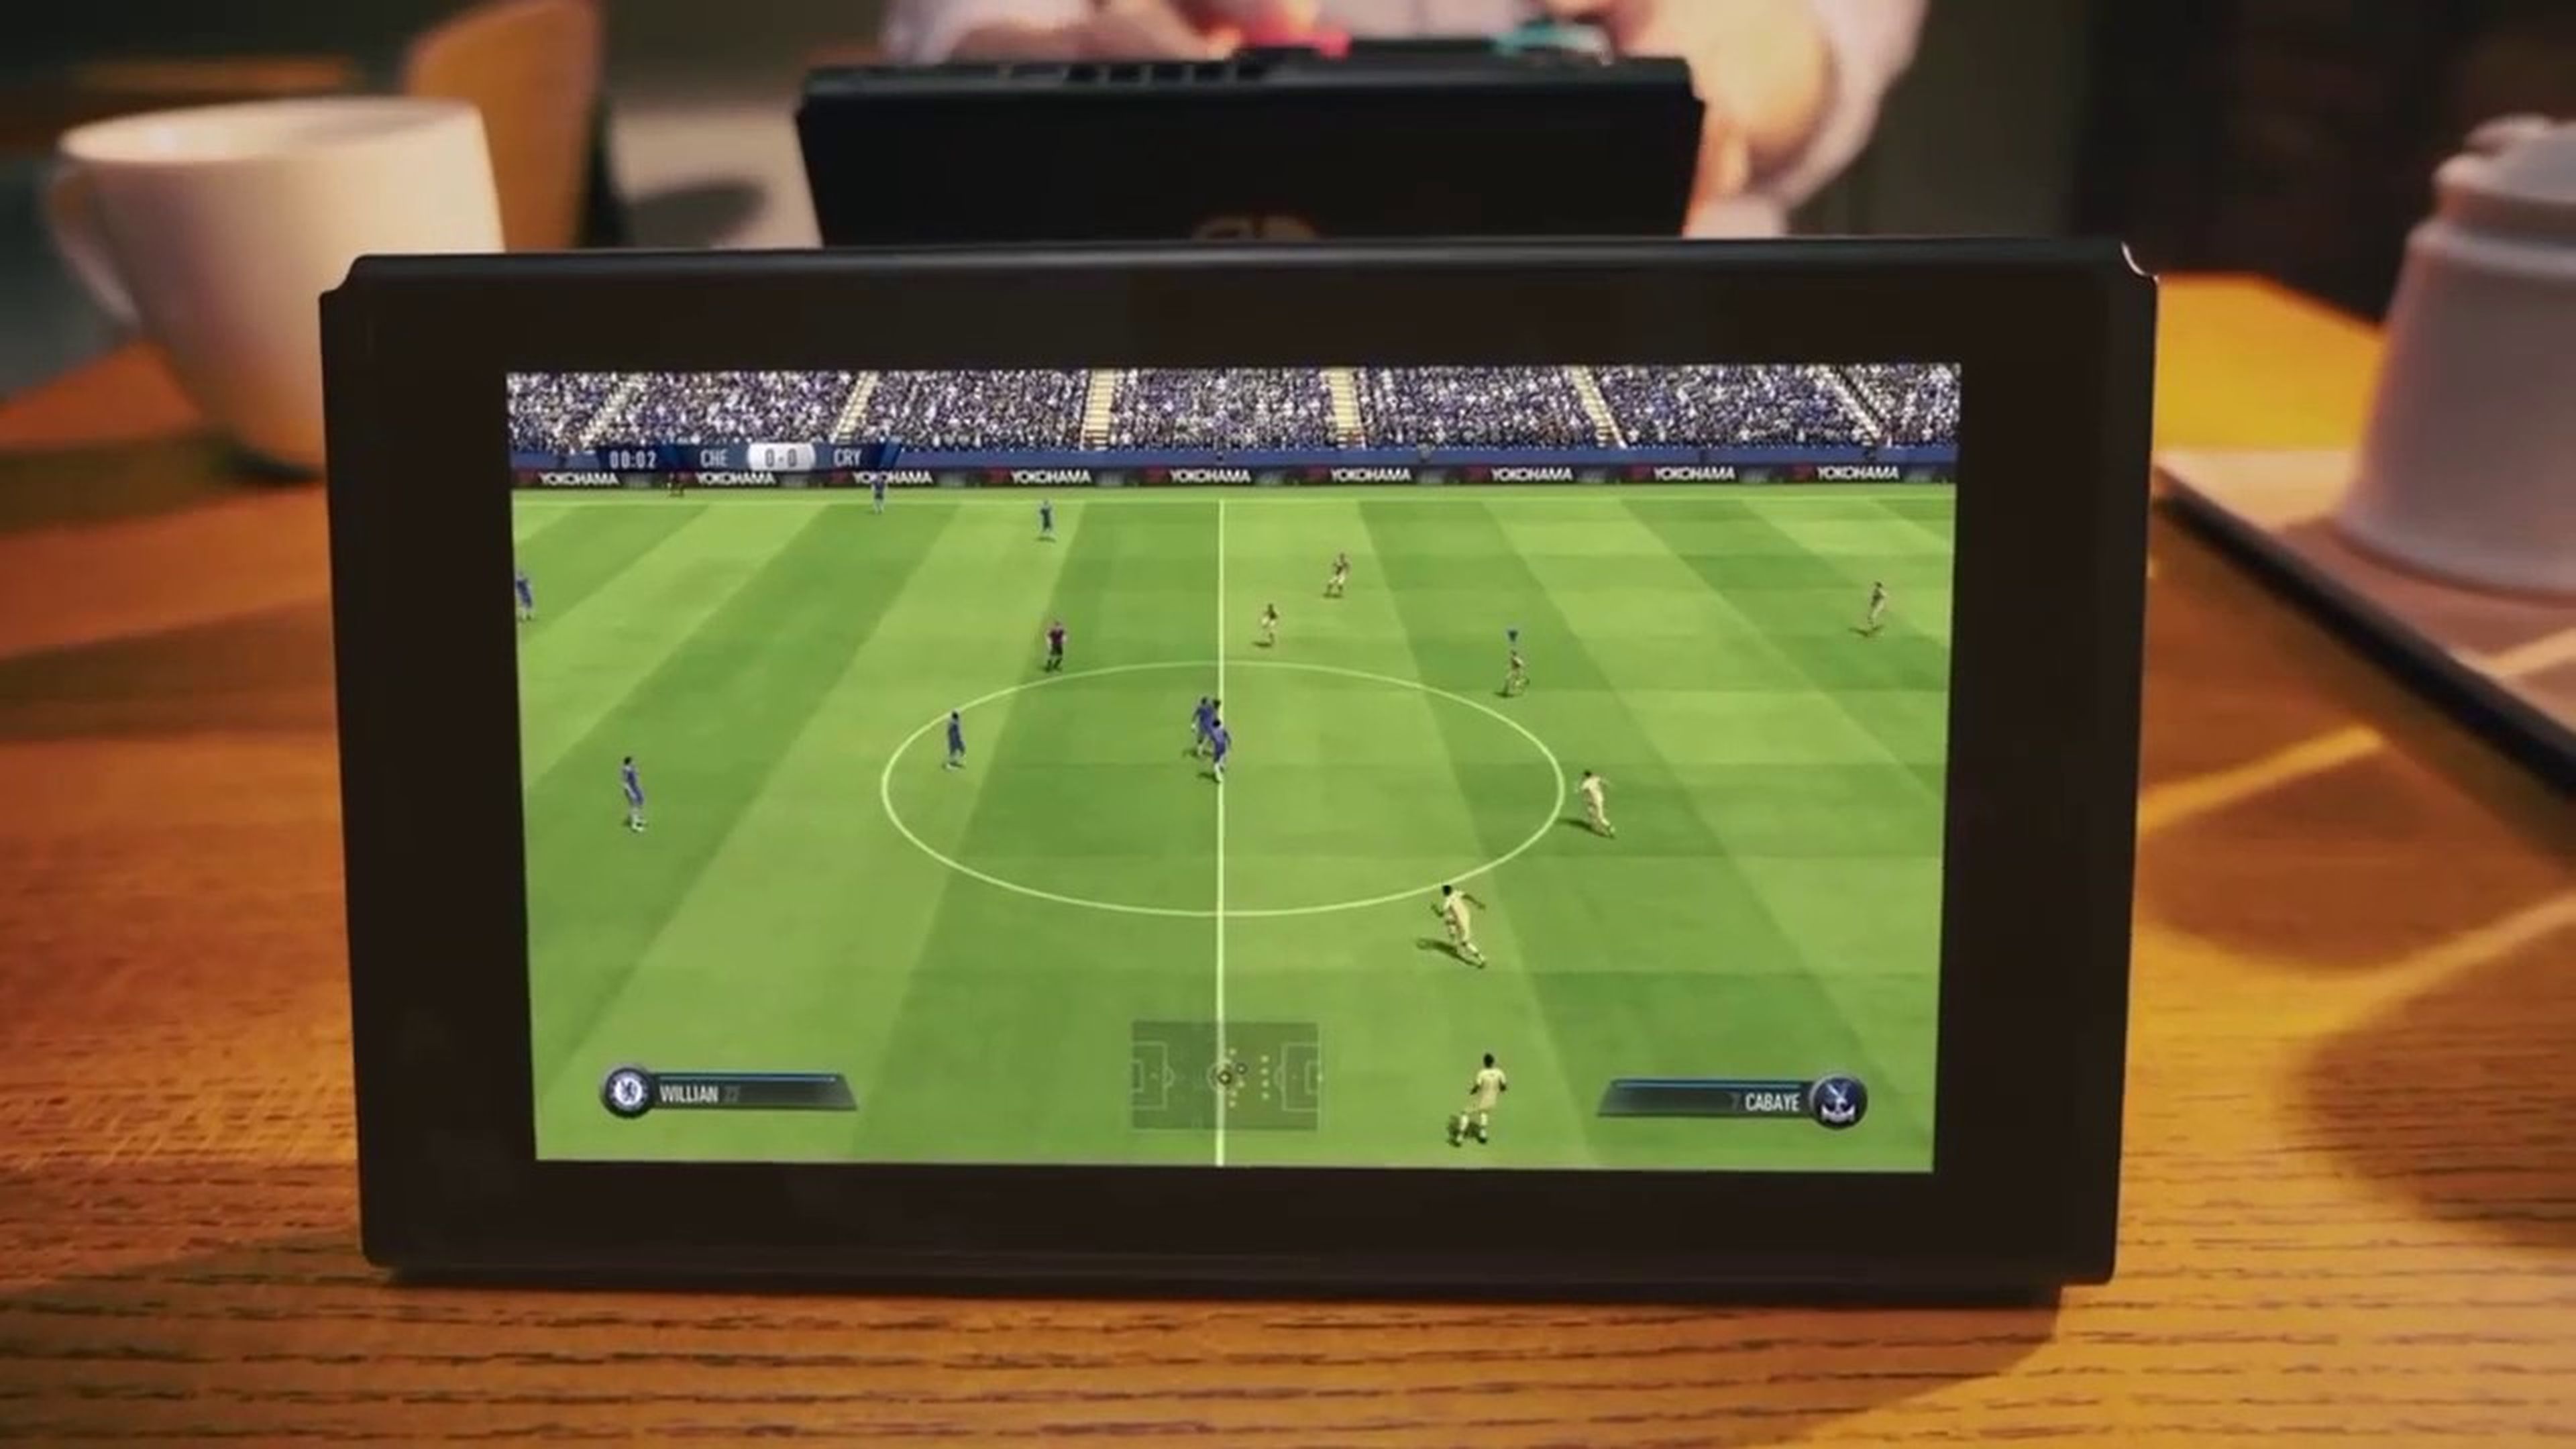 Podremos jugar contra cualquiera con otra Switch y FIFA 18 gracias al Wi-Fi de la consola.